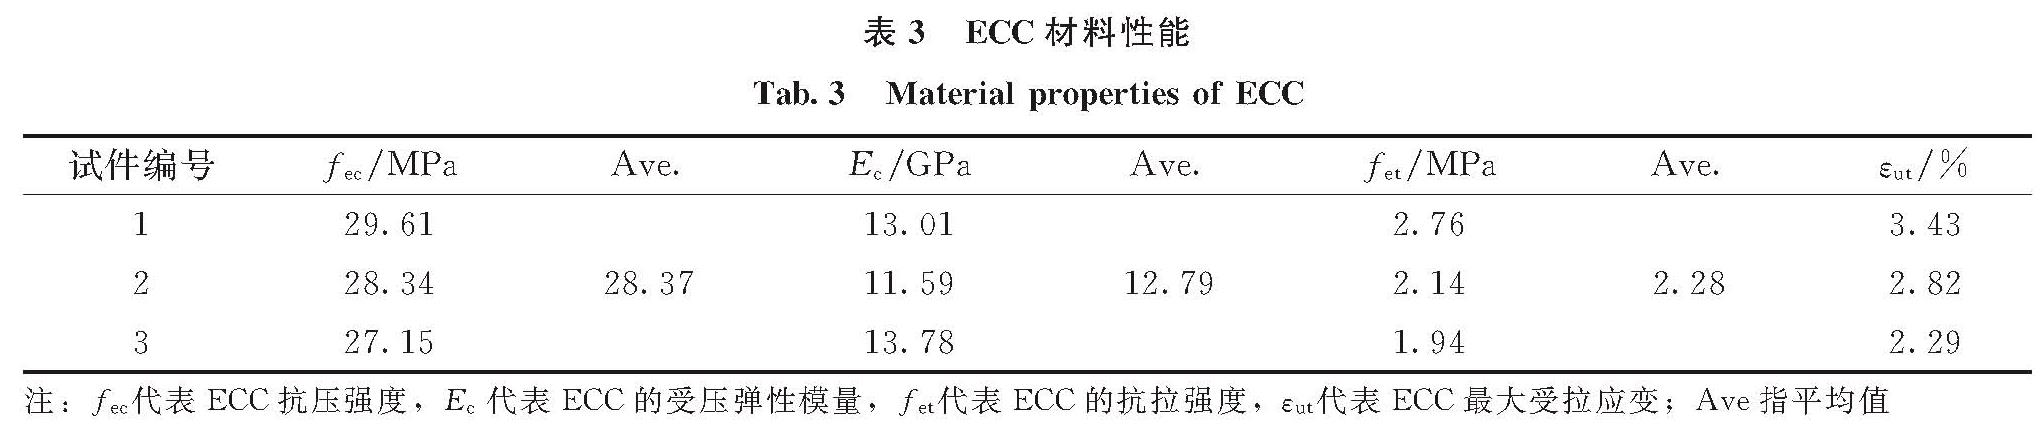 表3 ECC材料性能<br/>Tab.3 Material properties of ECC